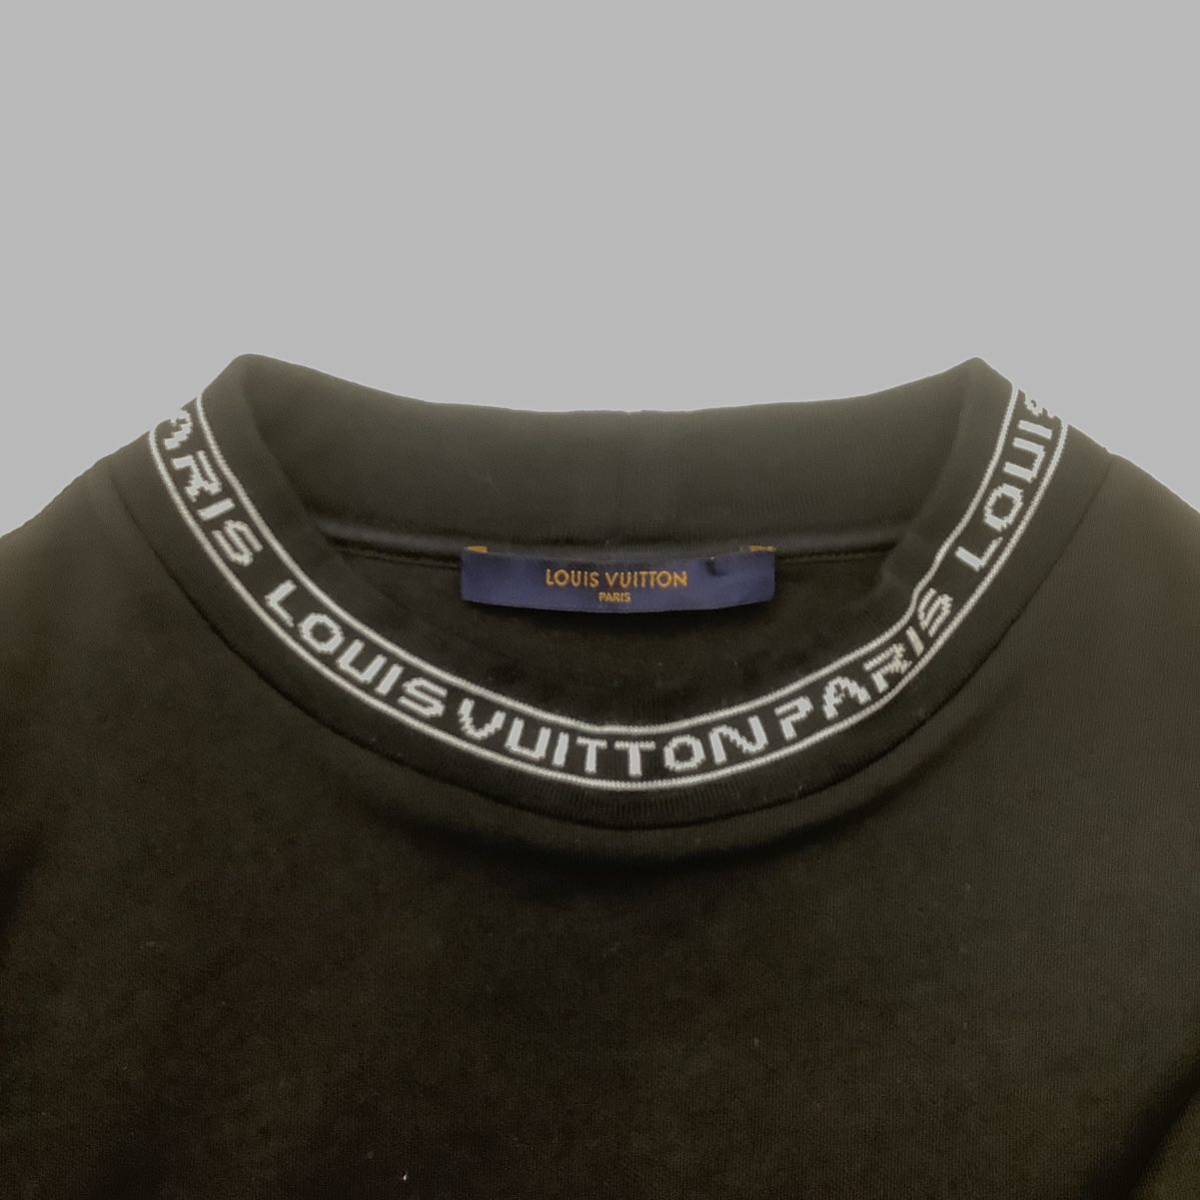 LOUIS VUITTON ルイヴィトン VCCM09 2019S/S NECK LOGO L/S TEE ネックロゴ ロングTシャツ BLACK ブラック Sサイズ 647452_画像3